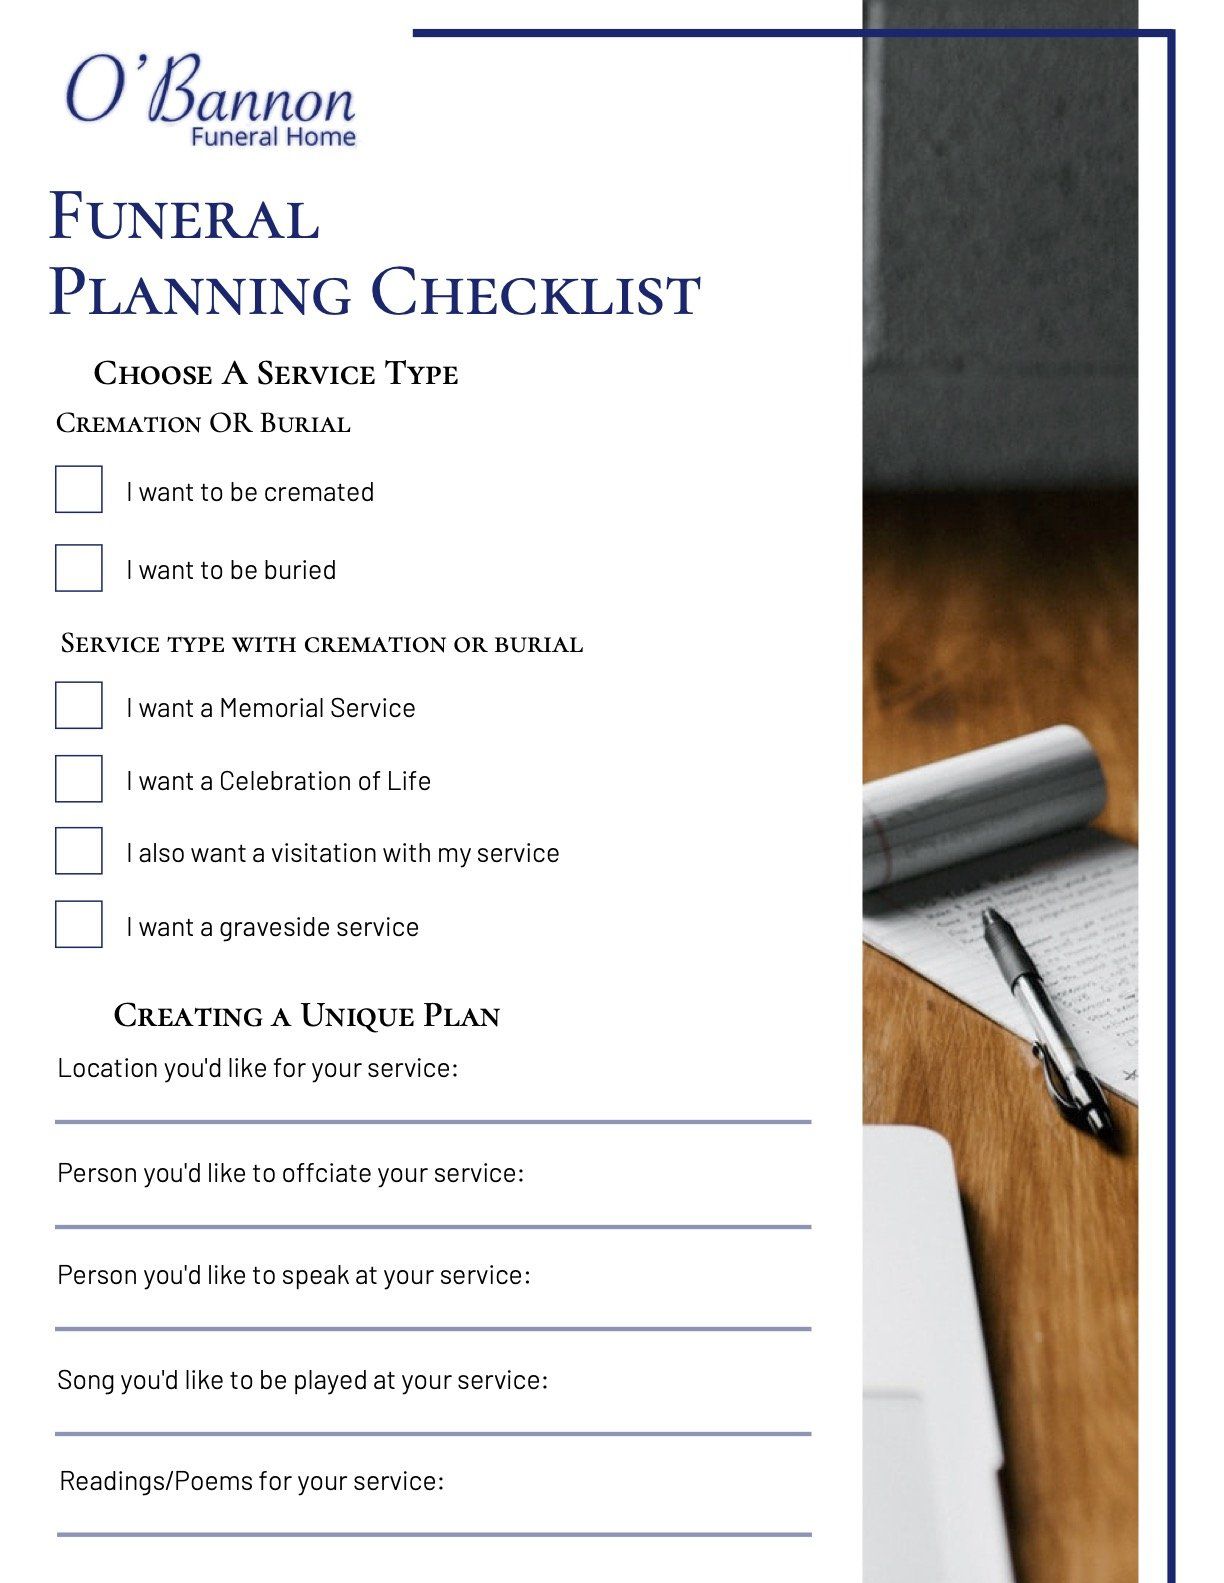 O'Bannon Funeral Pre-Planning Checklist